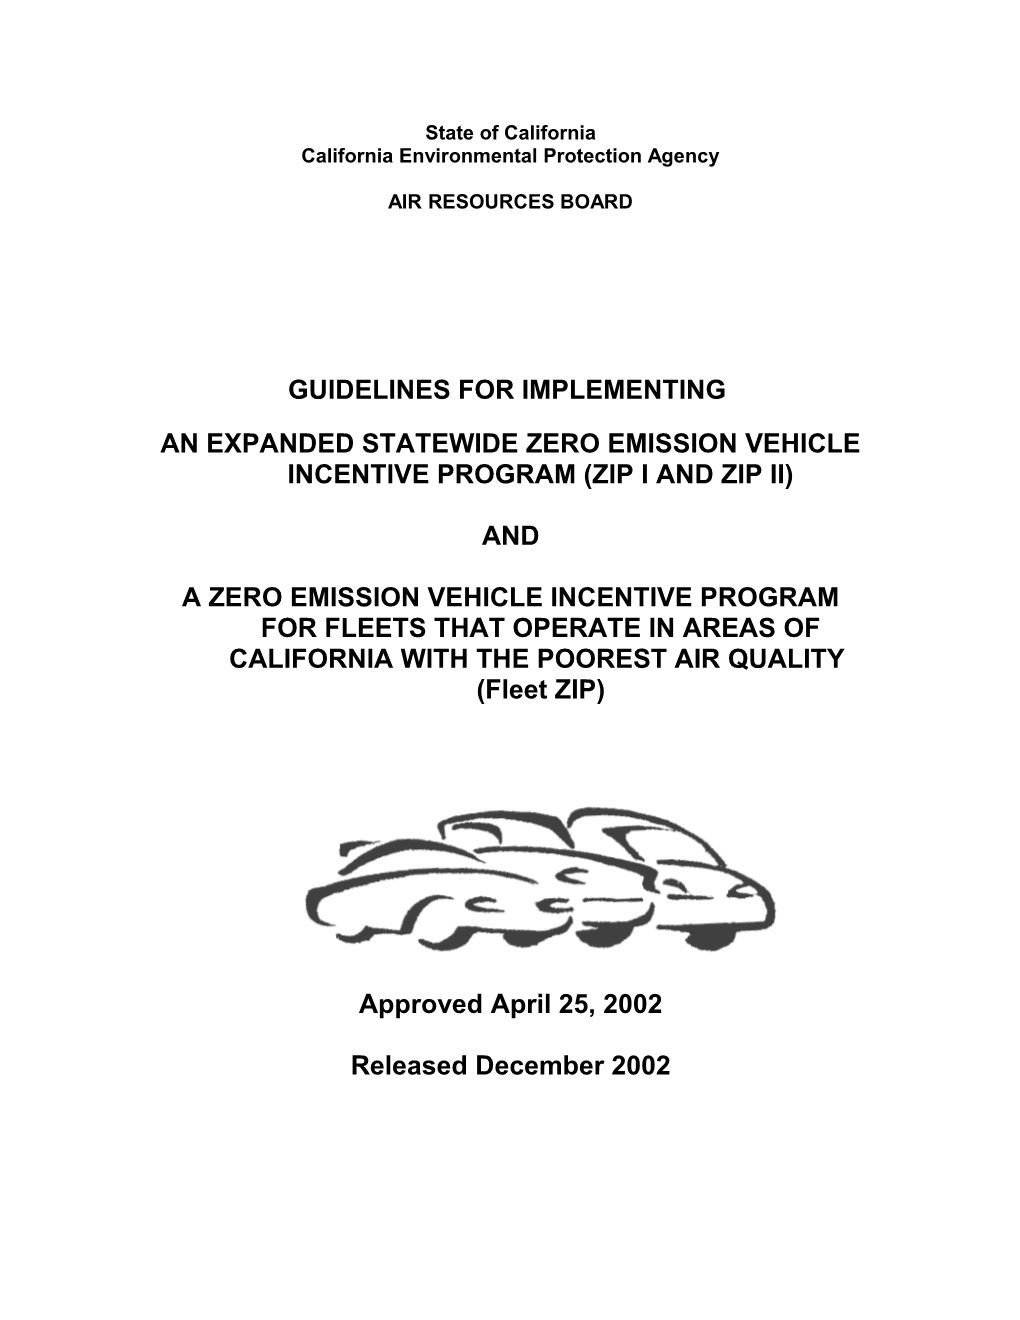 Guidelines: 2002-12 ZIP I, ZIP II and Fleet ZIP Guidelines